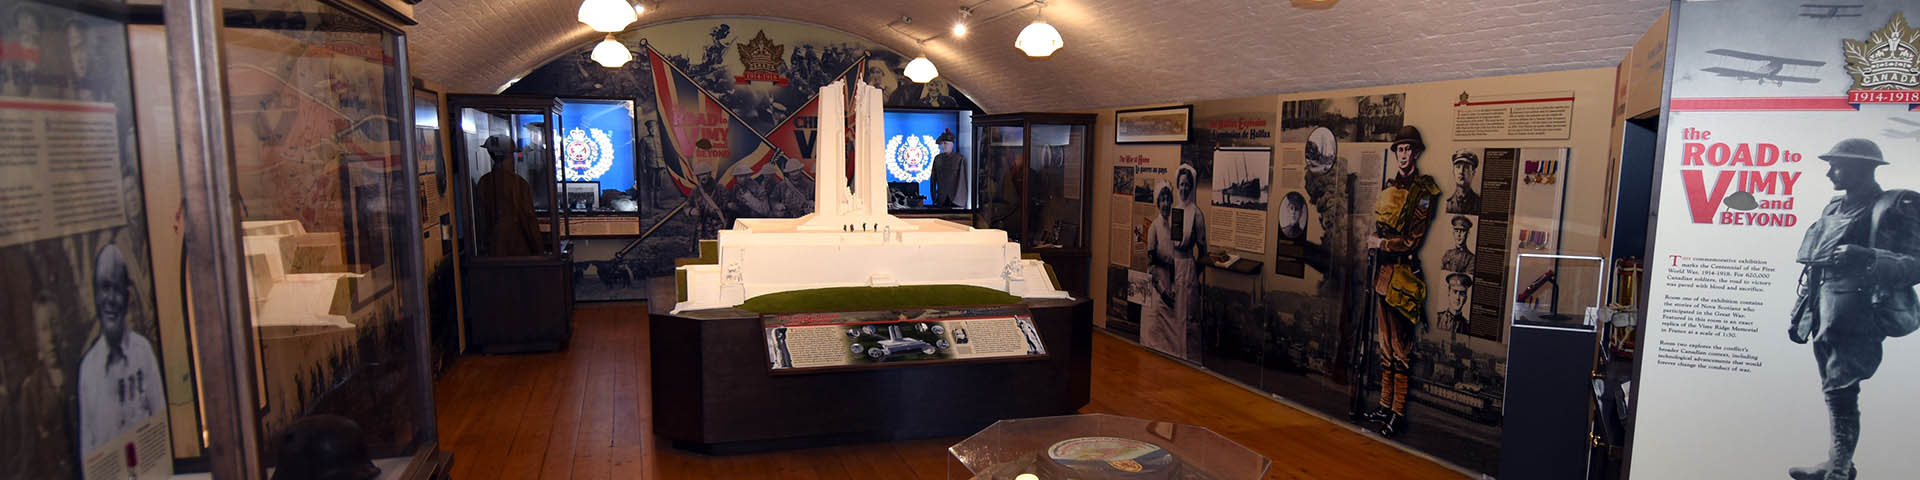 Reproduction du monument de Vimy intitulée « The Road to Vimy and Beyond » présentée au Musée de l’Armée, au lieu historique national de la Citadelle-d’Halifax. 